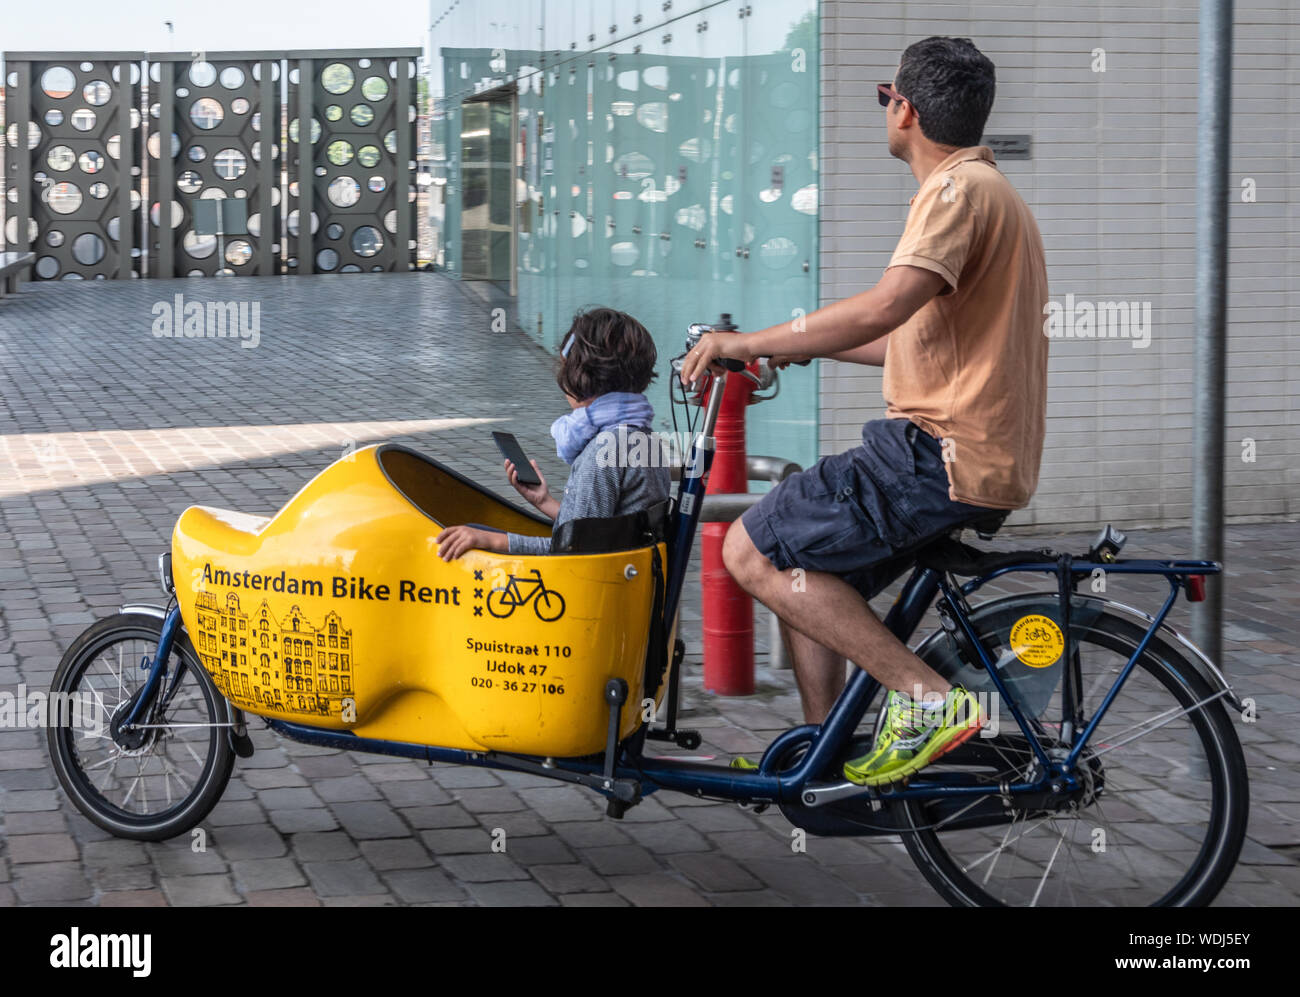 Amsterdam, Pays-Bas - 30 juin 2019 : Libre de bakfiets, front-tronc vélo pour transporter une charge, un enfant ici. Homme pédaler comme vu sur IJdok. Tr Banque D'Images